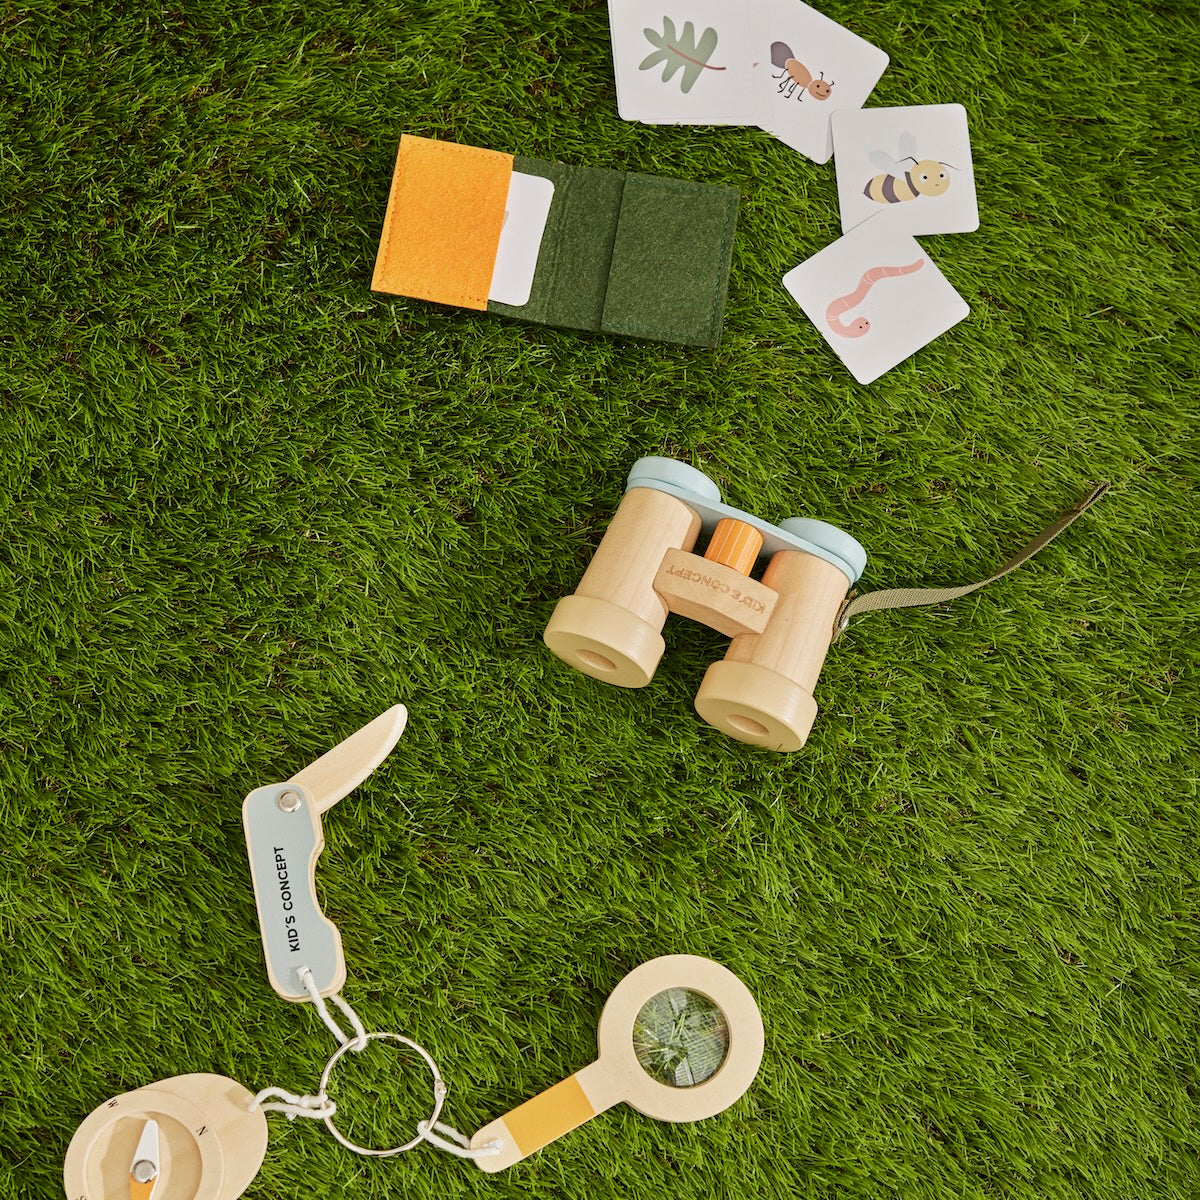 Op pad met de natuur ontdekkingsset van Kid’s Concept! Deze set bevat alles voor avontuurlijke kinderen: dierenkaartjes, vergrootglas, zakmes, kompas, verrekijker en handig mapje. Veilig en kindvriendelijk. VanZus